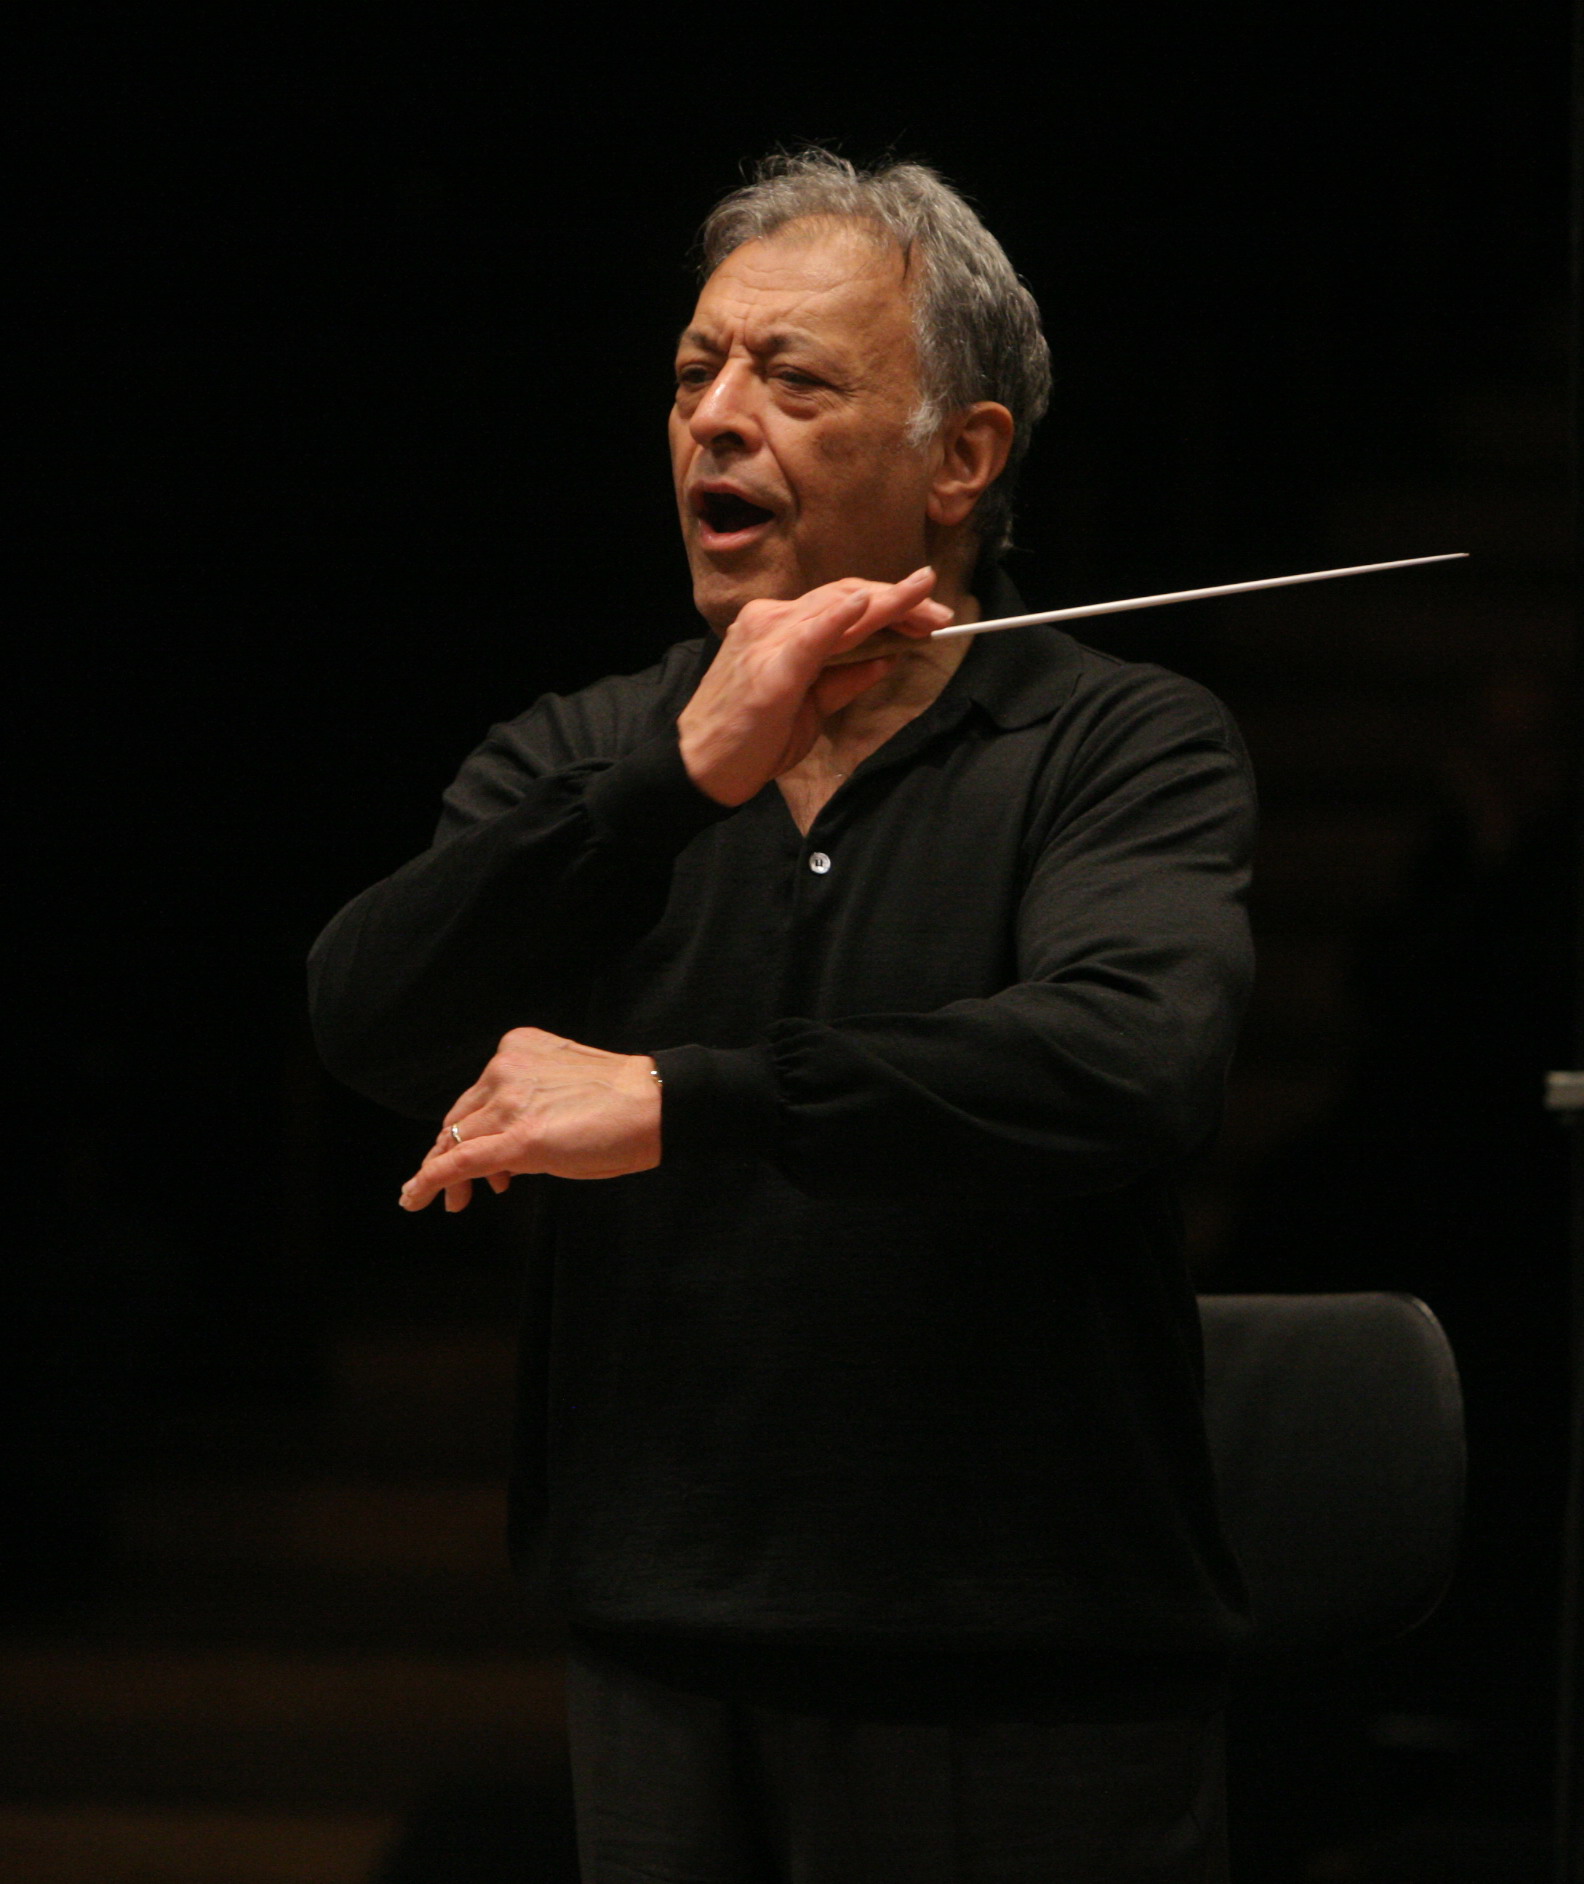 Le célèbre chef d’orchestre Zubin Mehta en pleine répétition (photo : Oded Antman).